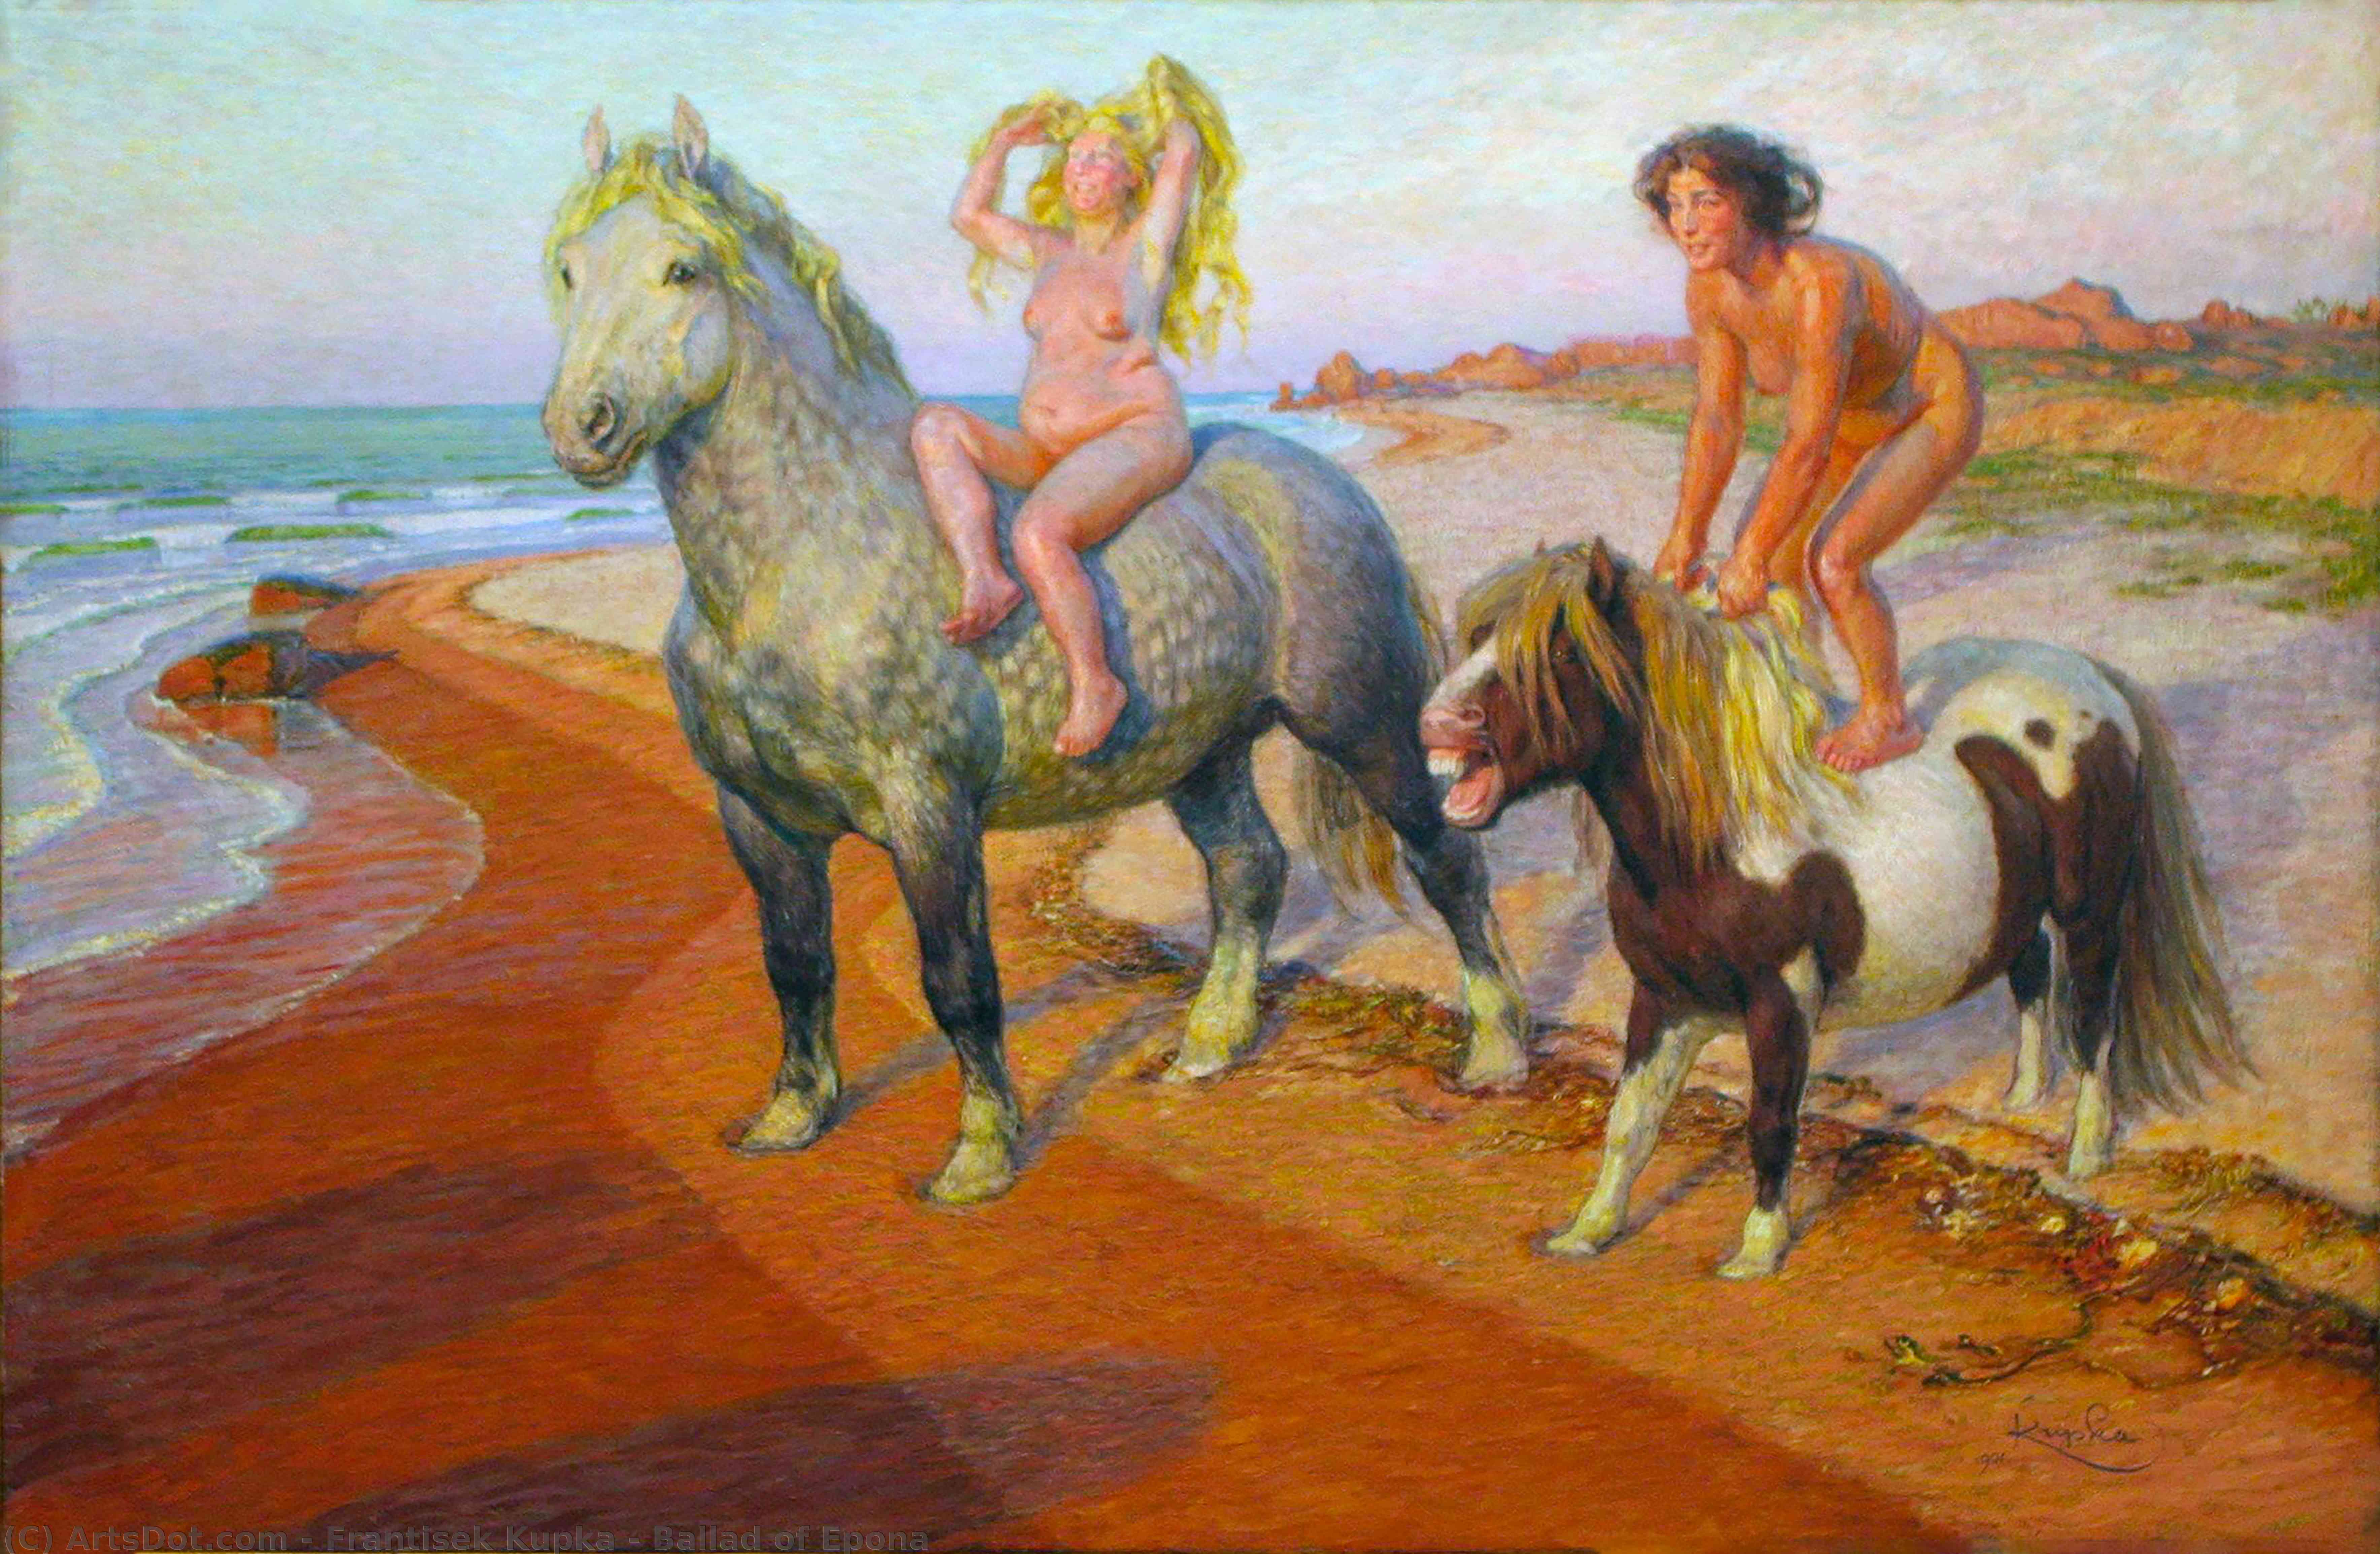 Wikioo.org – L'Encyclopédie des Beaux Arts - Peinture, Oeuvre de Frantisek Kupka - Ballade de epona